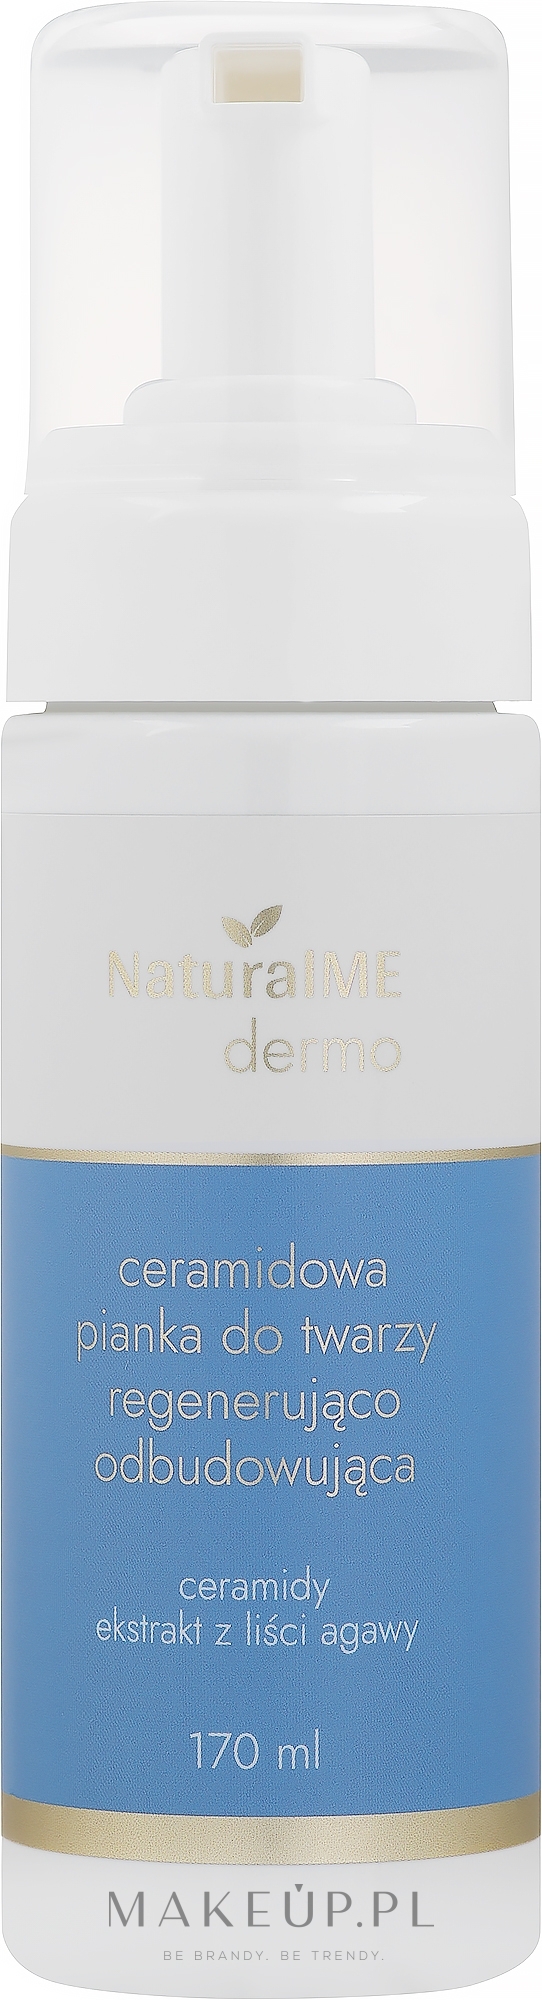 Regenerująco-odbudowująca ceramidowa pianka do mycia twarzy - NaturalME Dermo — Zdjęcie 170 ml